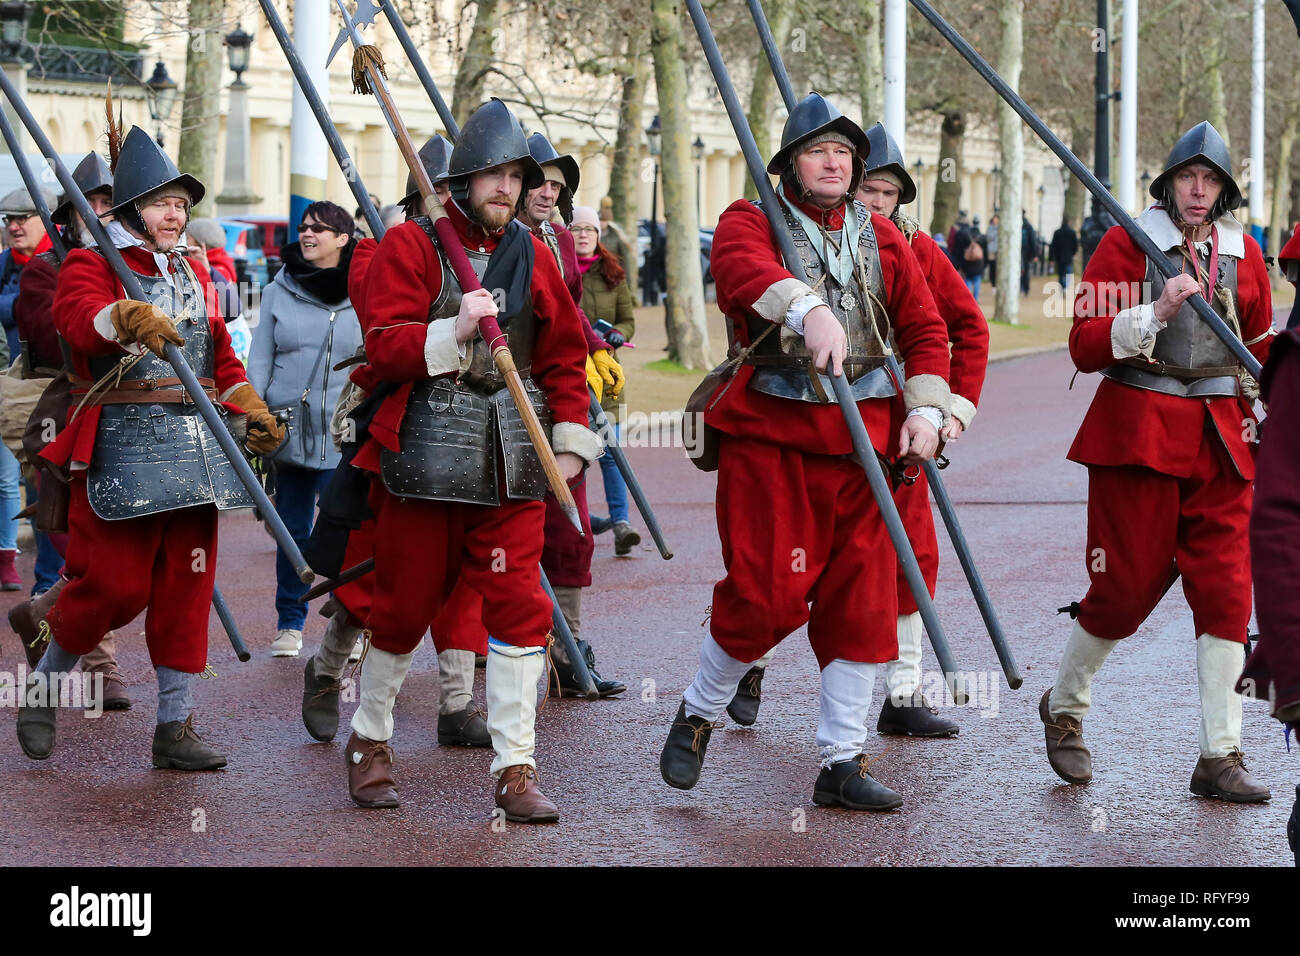 Les membres de la guerre civile anglaise Société sont vu re-enacting pendant la commémoration de l'exécution de Charles I, qui a été prise par l'armée du roi du Palais St James à la maison des banquets de Whitehall, pour son exécution, le 30 janvier 1649. Banque D'Images